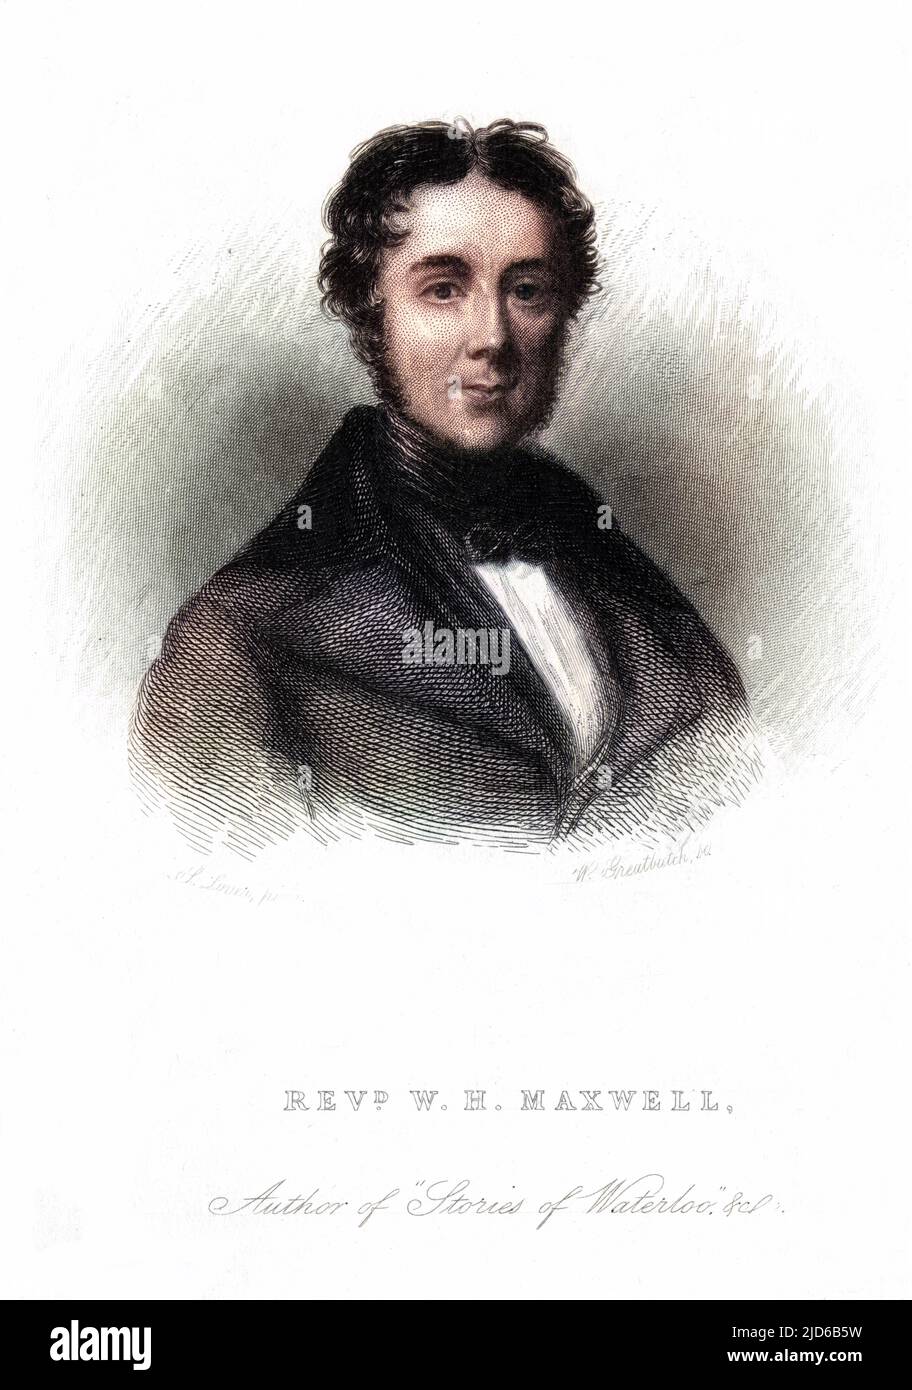 WILLIAM HAMILTON MAXWELL Irischer Schriftsteller - das einzige Porträt, das wir von ihm haben, ohne dass ein Hund seine Nase in das Bild stochen muss... Kolorierte Version von : 10164709 Datum: 1792 - 1850 Stockfoto